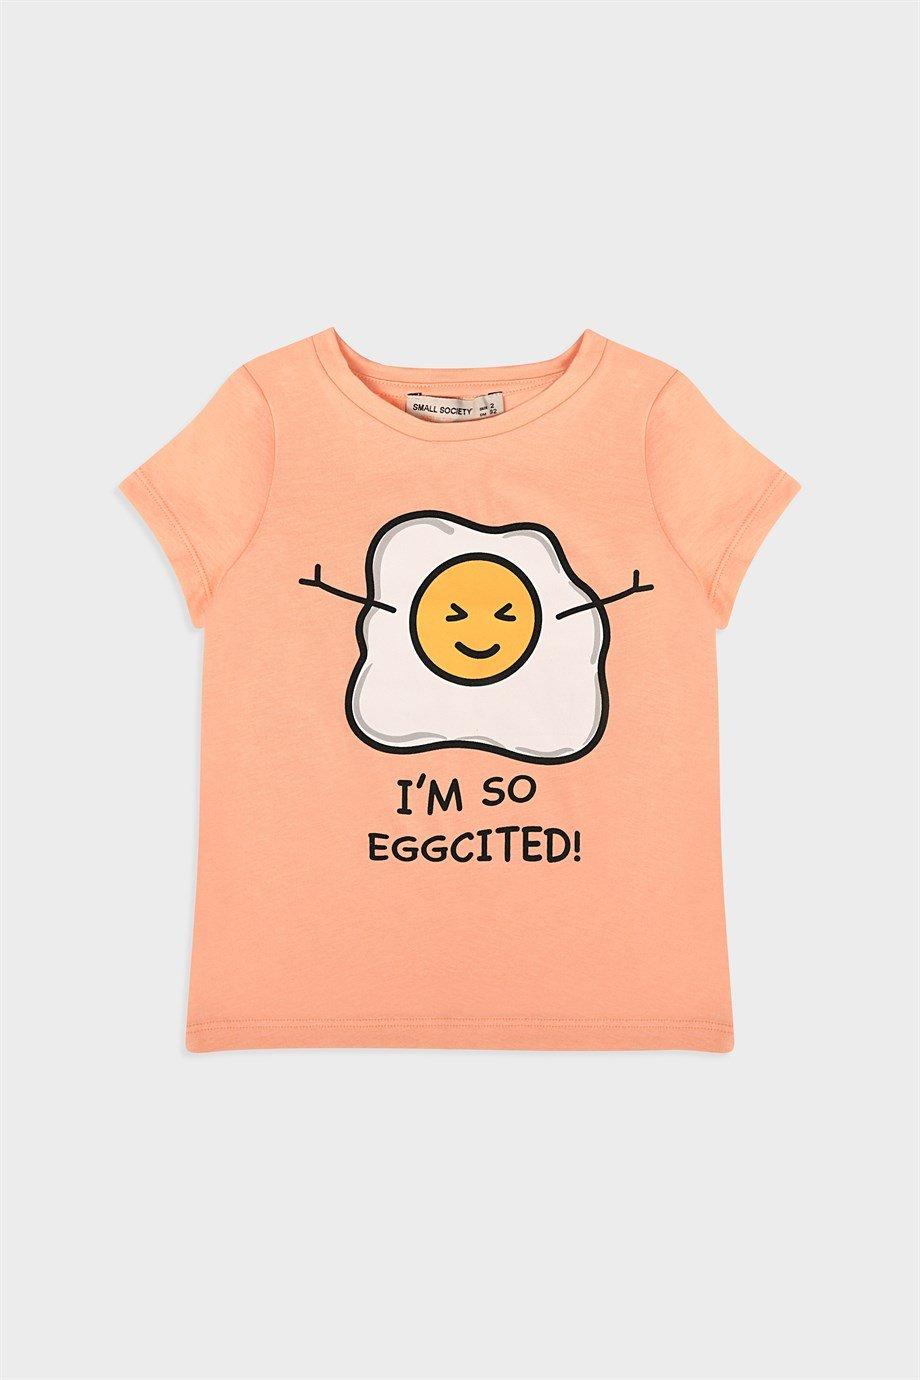 Small Society Zalm ei bedrukt T-shirt voor meisje